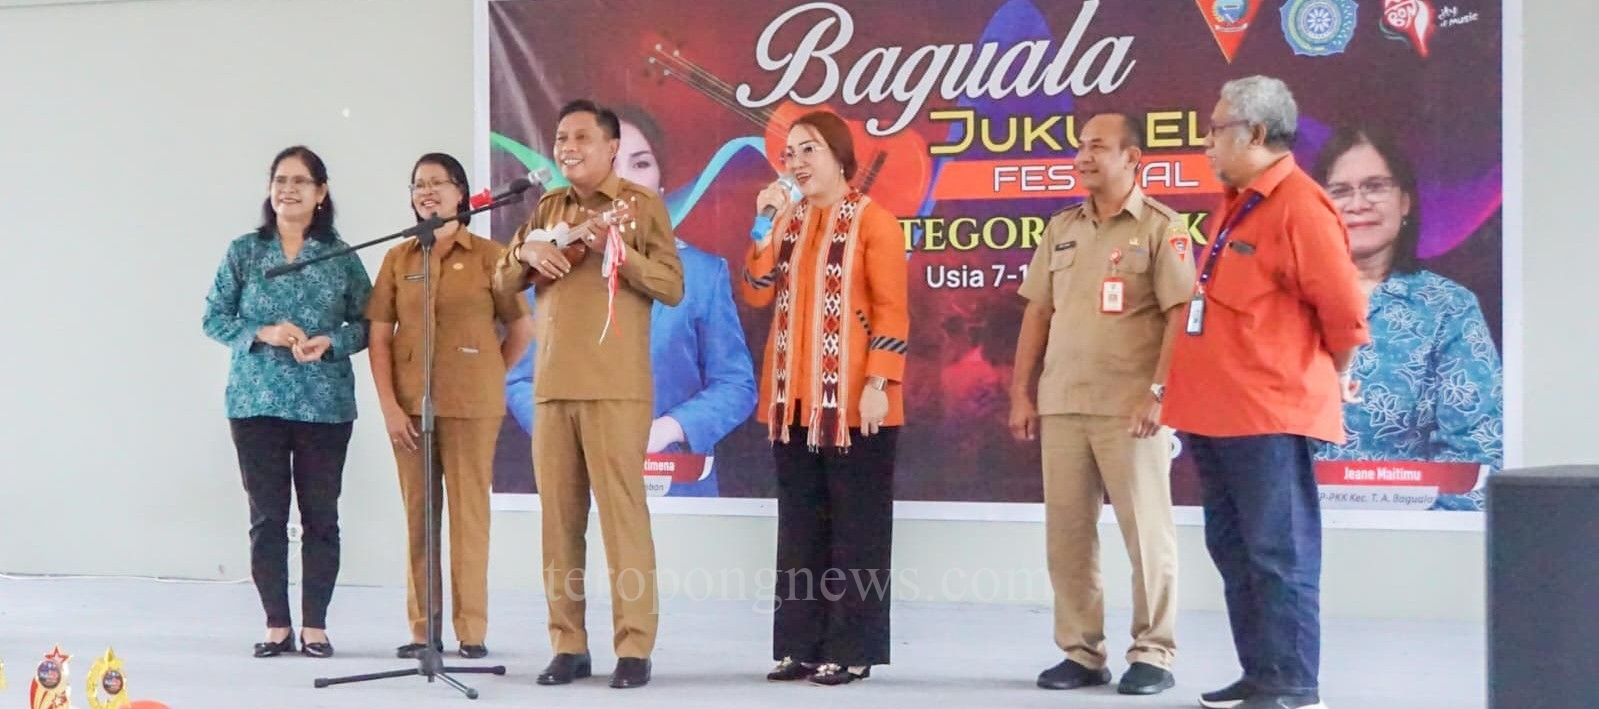 PKK Kecamatan Baguala Gelar Festival Ukulele